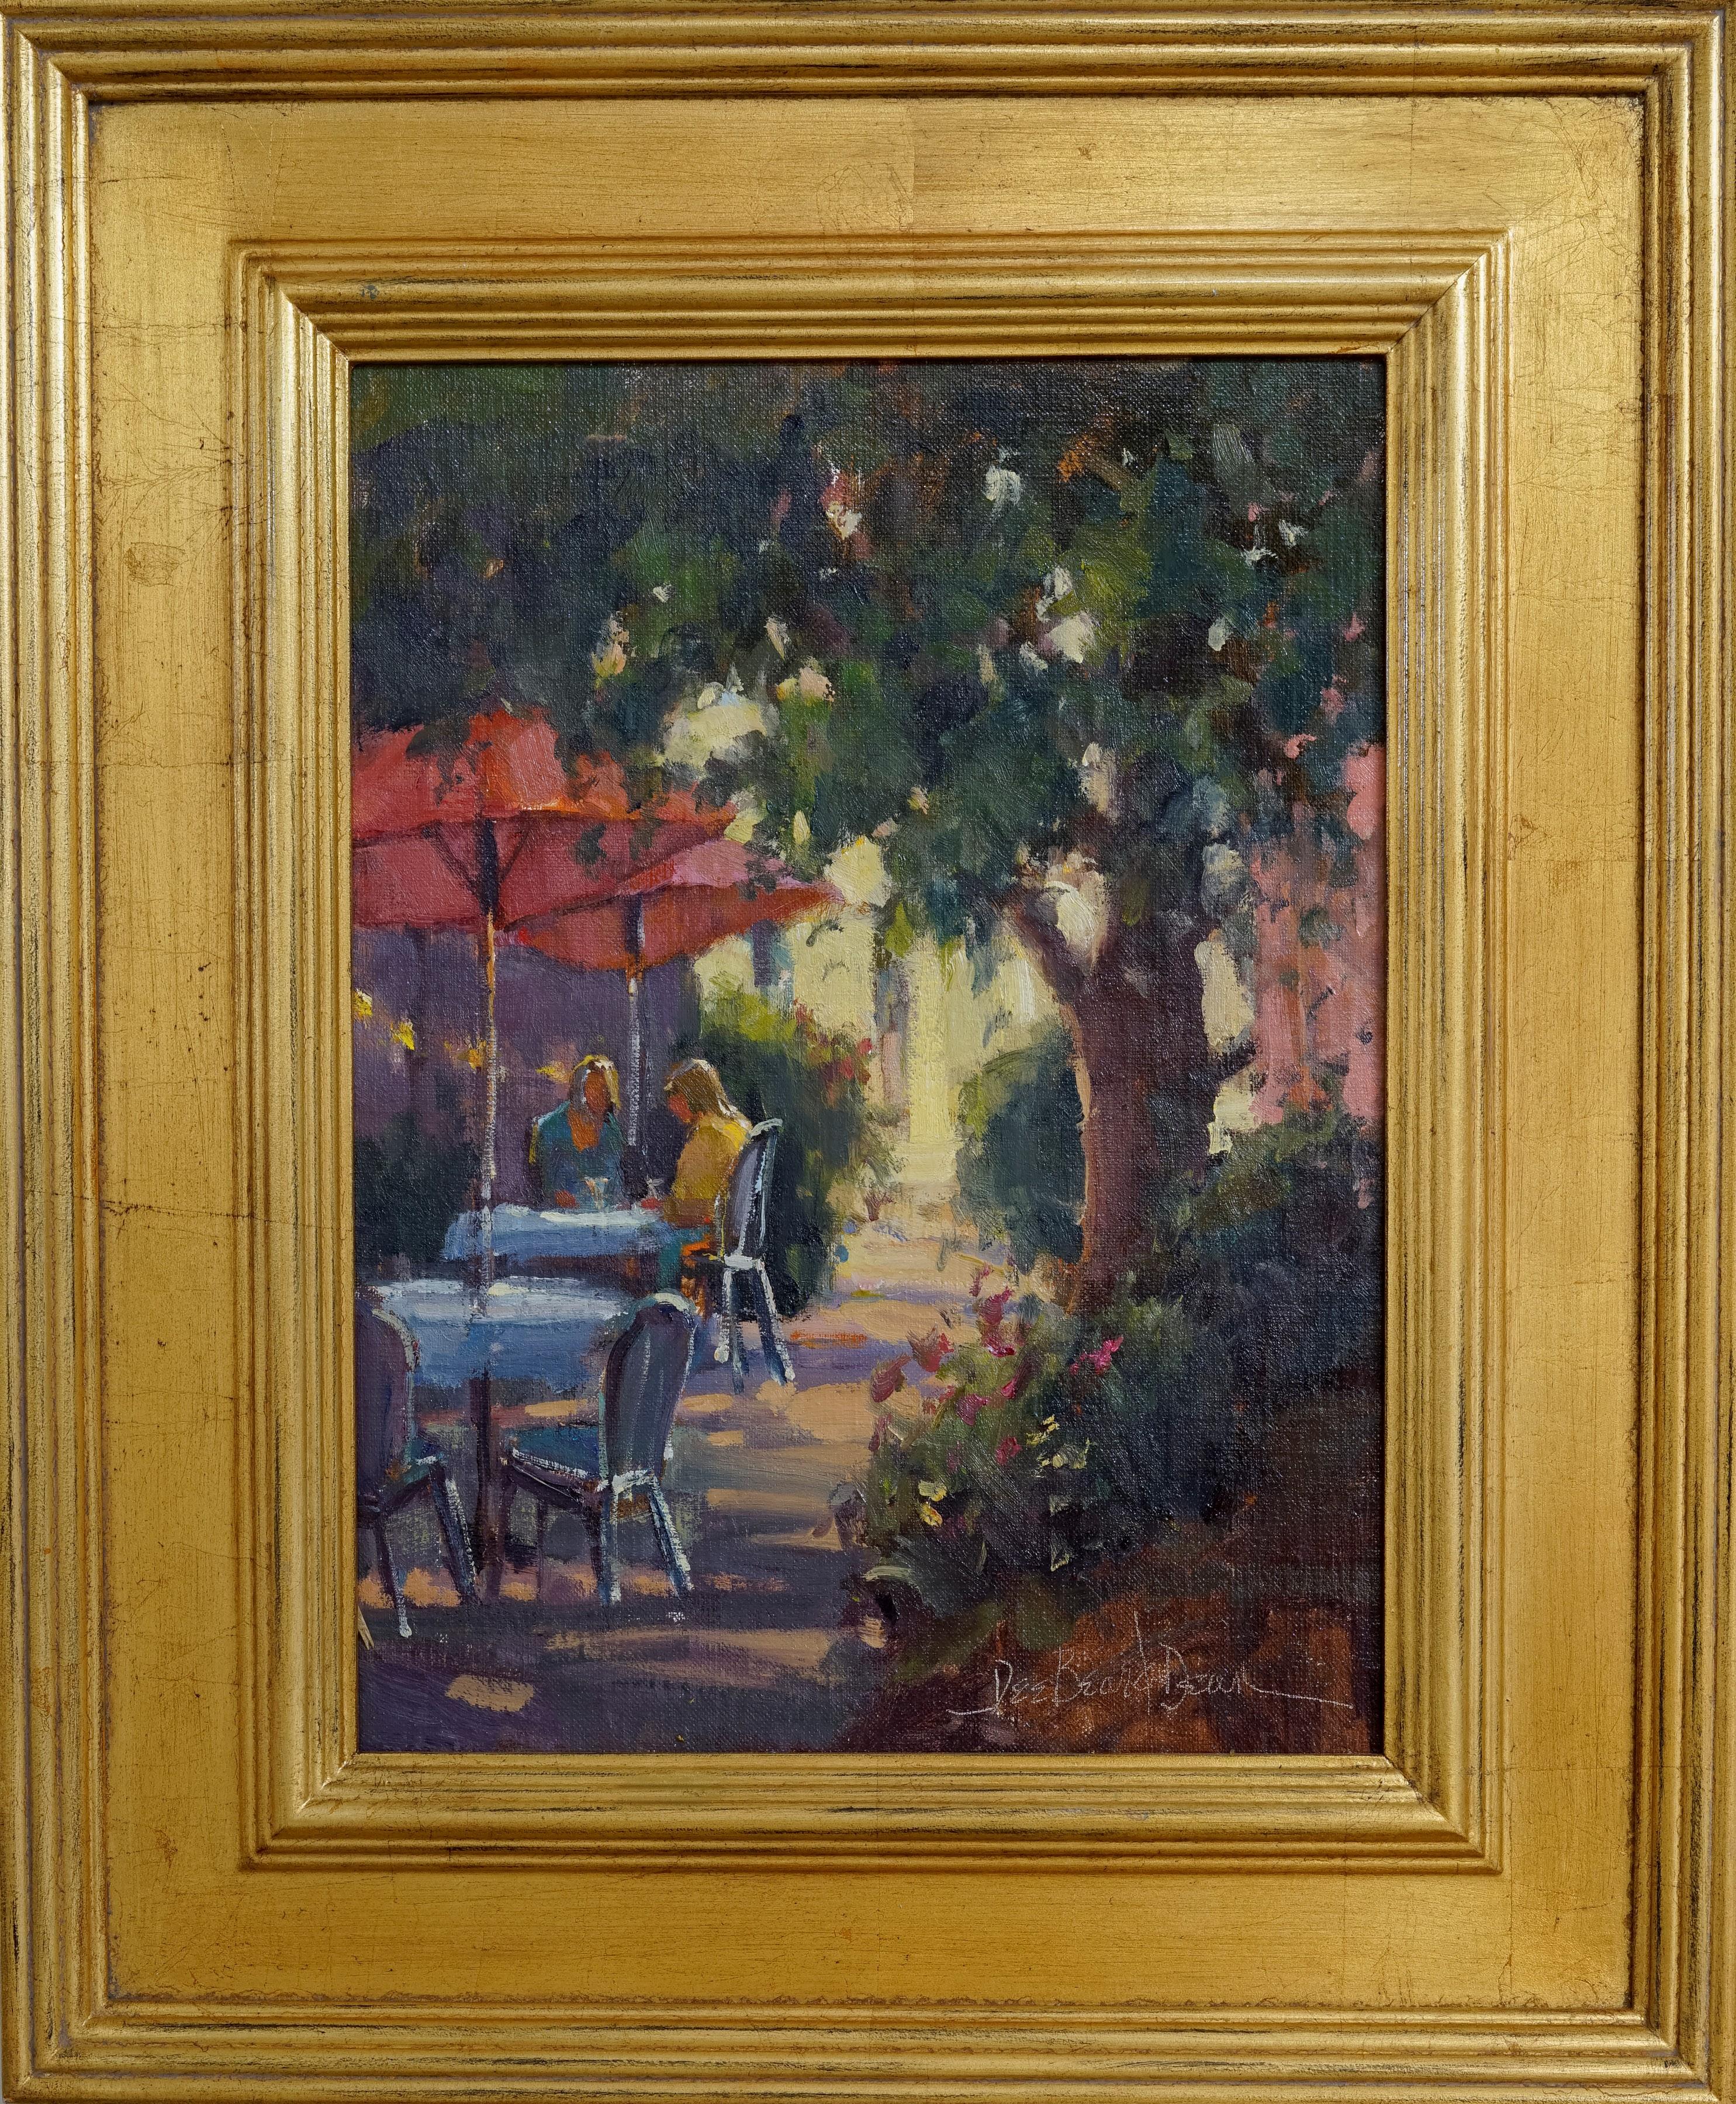 Dee Beard Dean Interior Painting - Outdoor Cafe, Plein Air Original Fine Art Gold Frame Oil on Linen Board